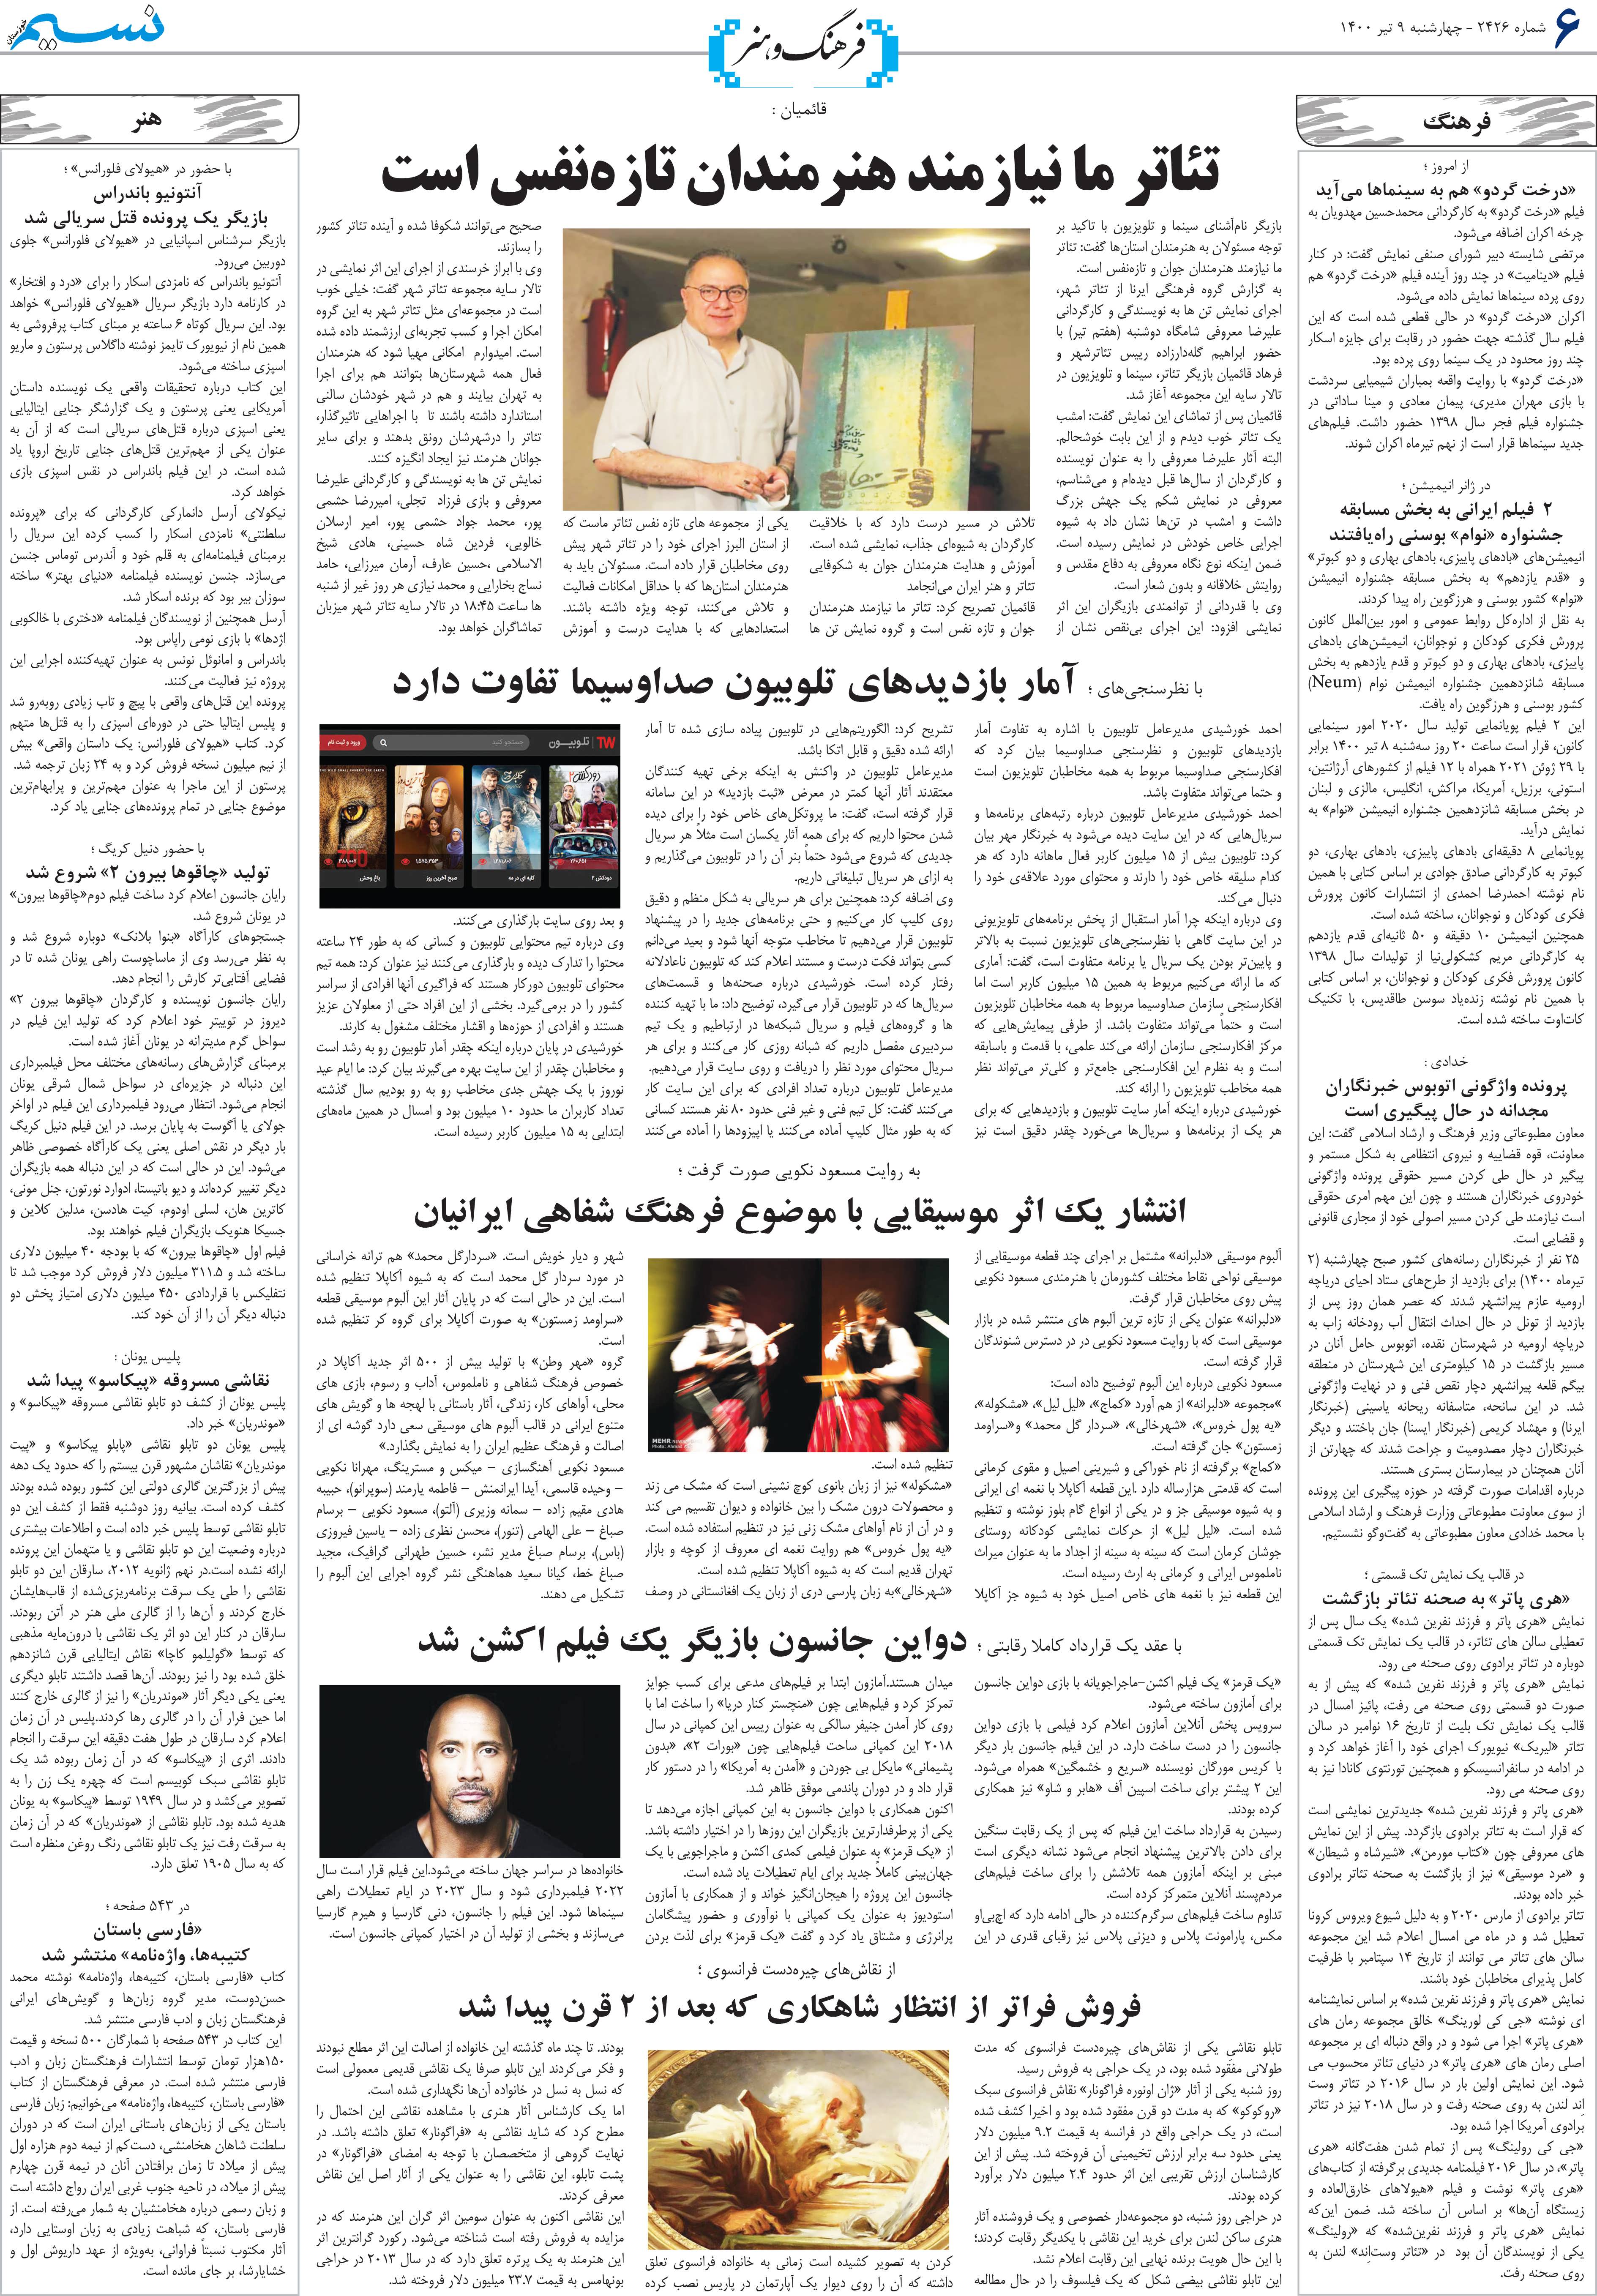 صفحه فرهنگ و هنر روزنامه نسیم شماره 2346